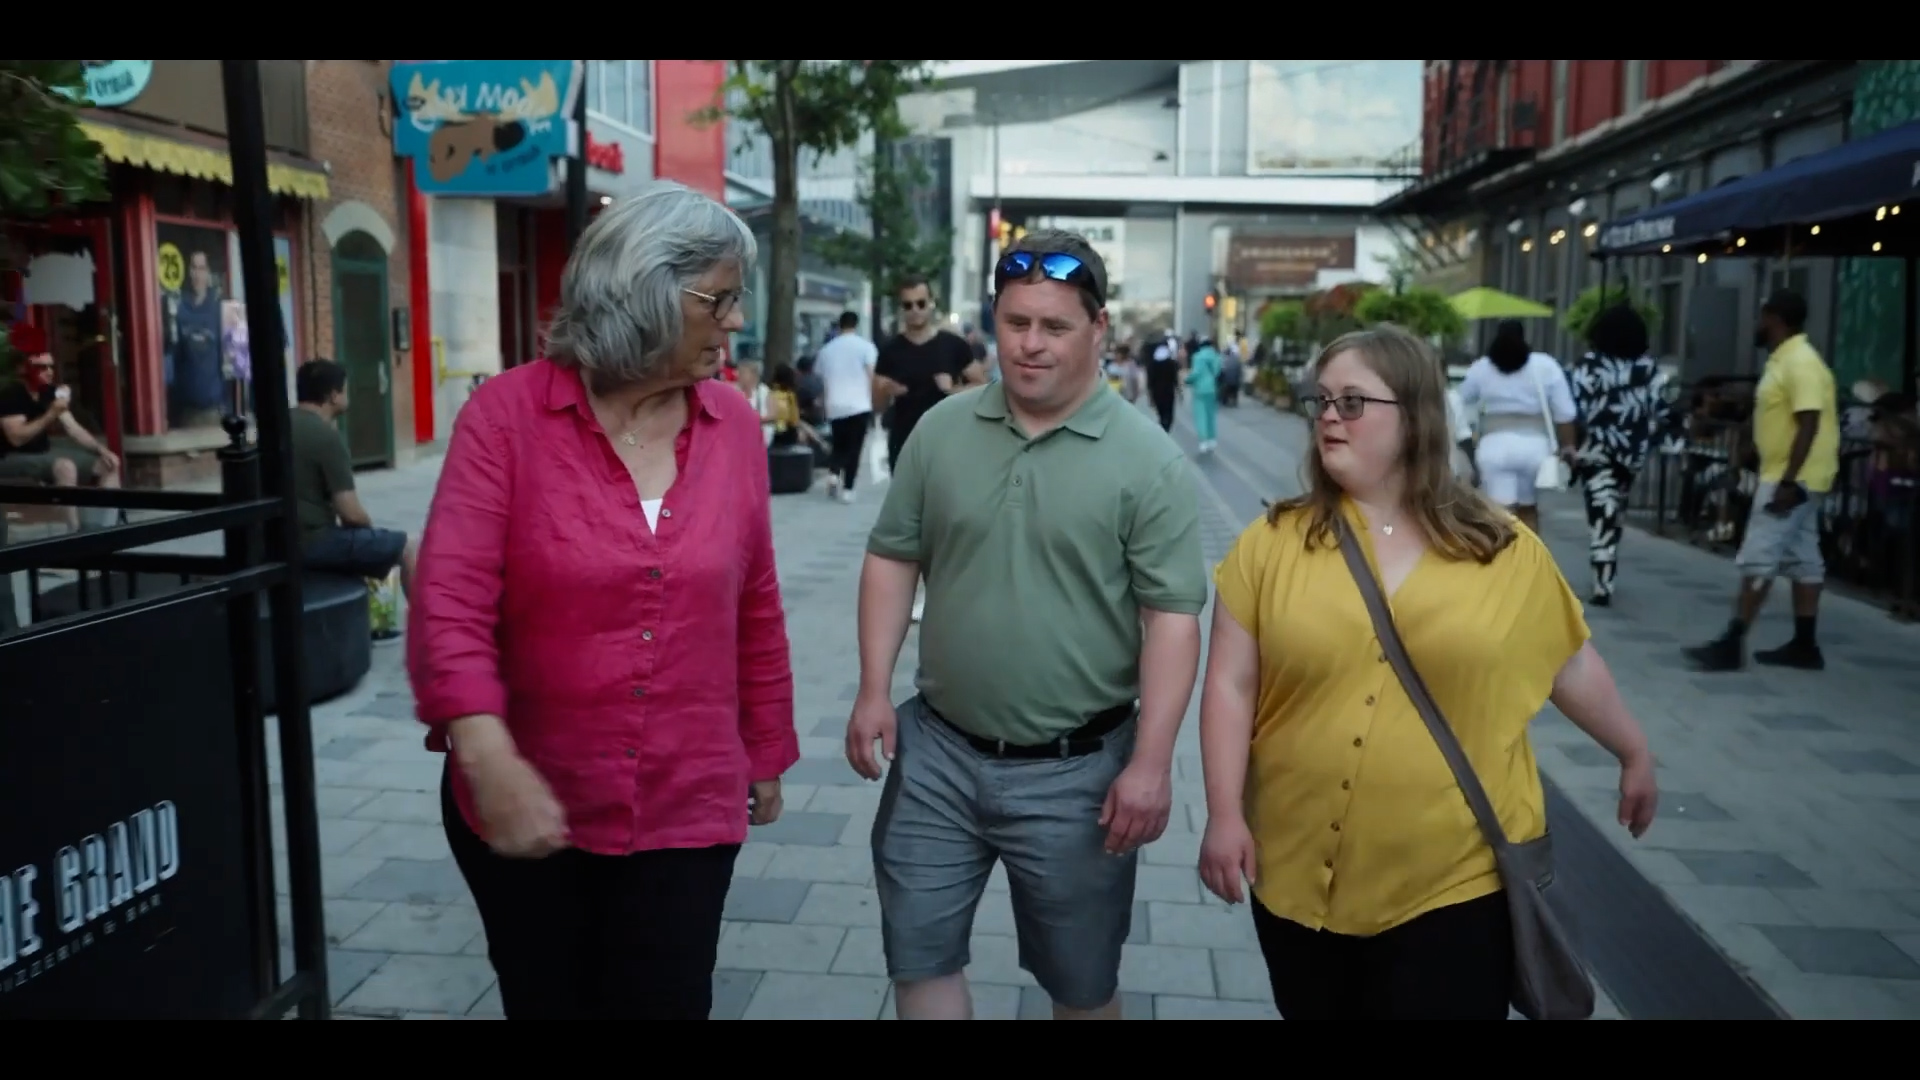 Capture d'écran de la minute 01:53 de la vidéo montrant Daniel et Lisa sortir de la station de train léger et marchent dans la rue pour accueillir Kathy.